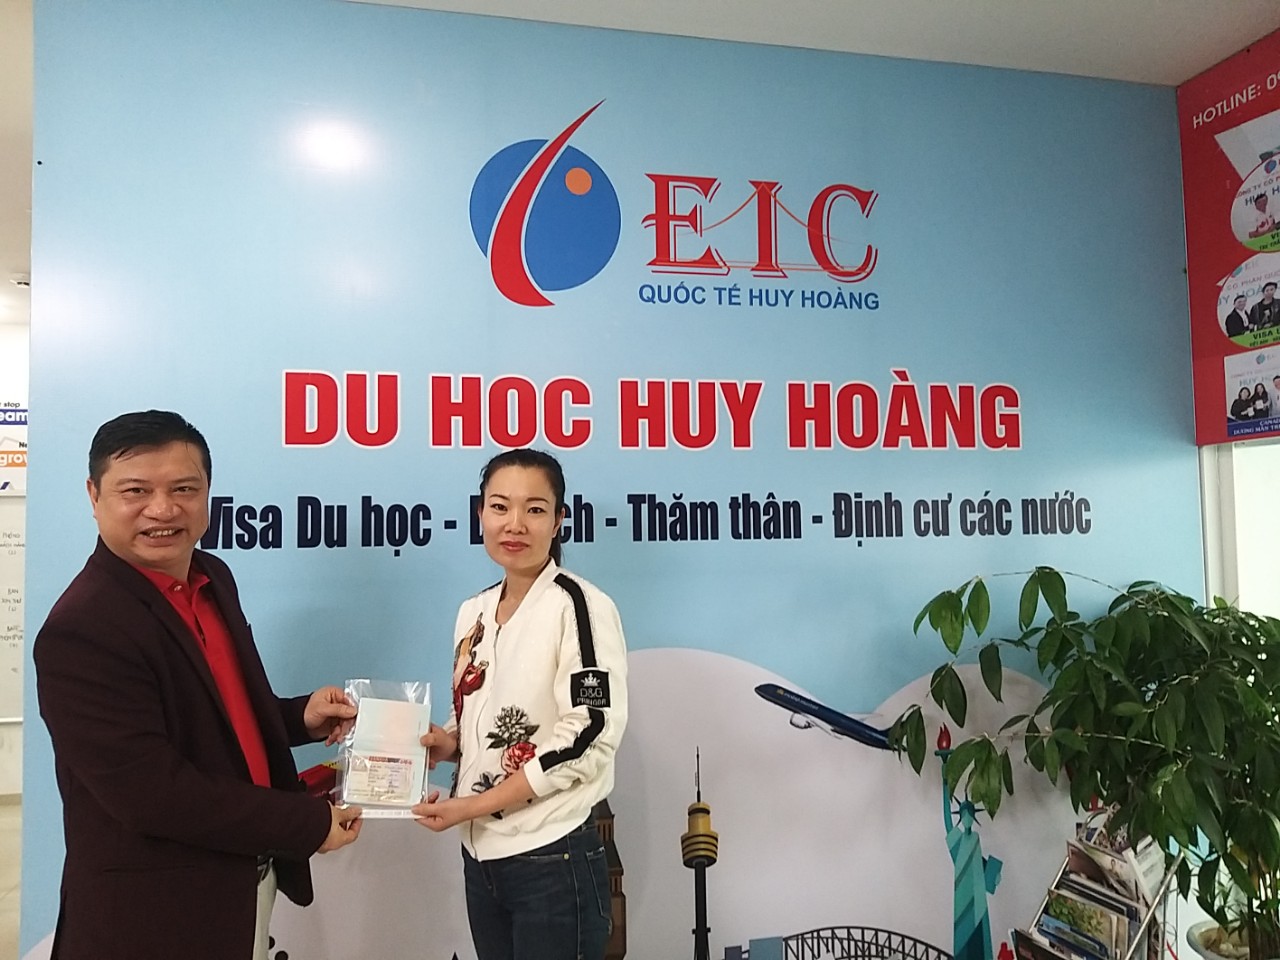 TGĐ trao visa Canada du lịch Canada cho bà Nguyễn Thị Sinh